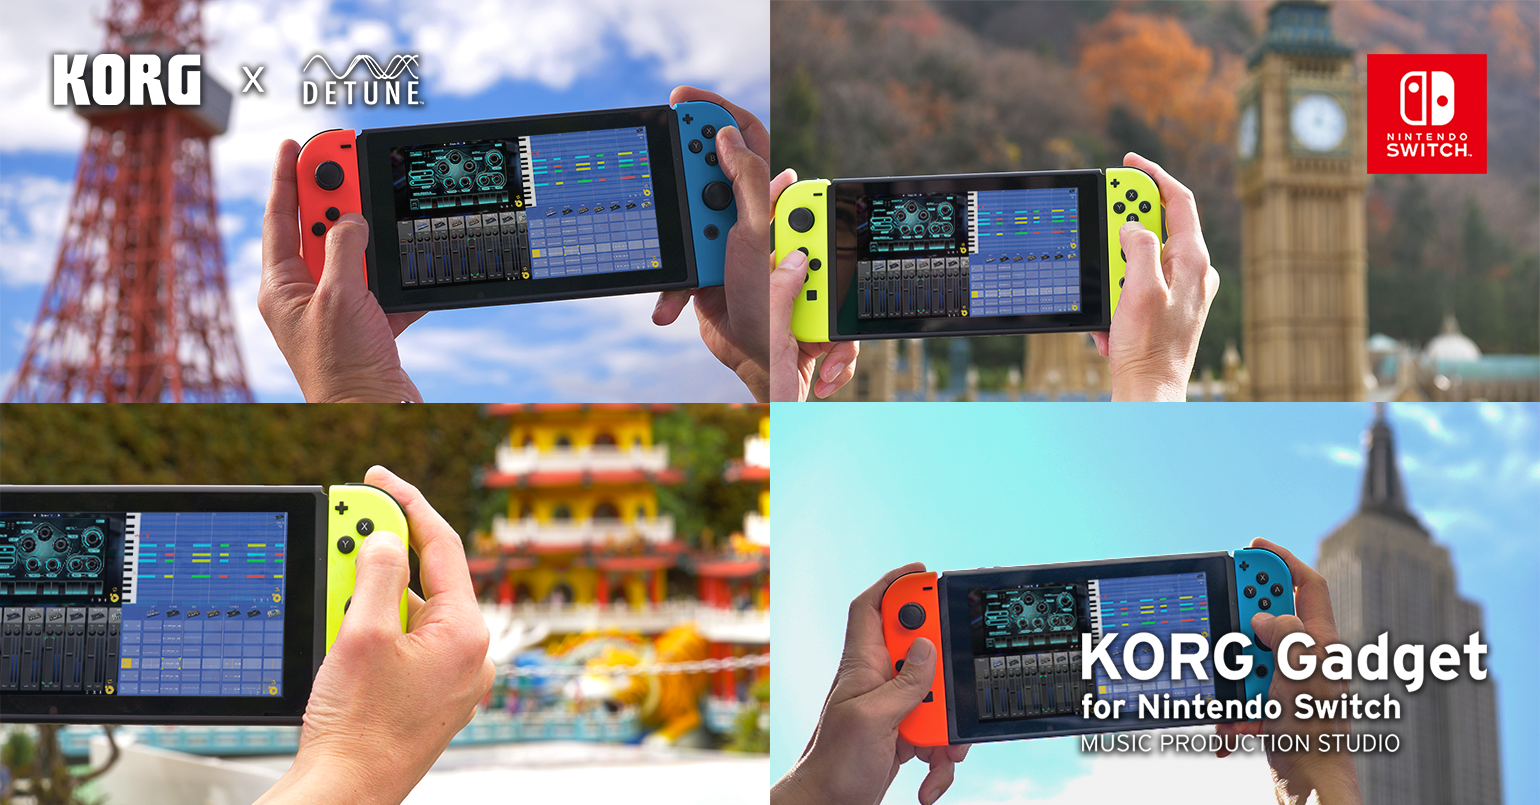 minstens bioscoop knal Nieuws | Samen online muziek maken: KORG Gadget voor de Nintendo Switch  versie 2.0 is nu beschikbaar - met online Multiplayer-mogelijkheden! | KORG  (The Netherlands)